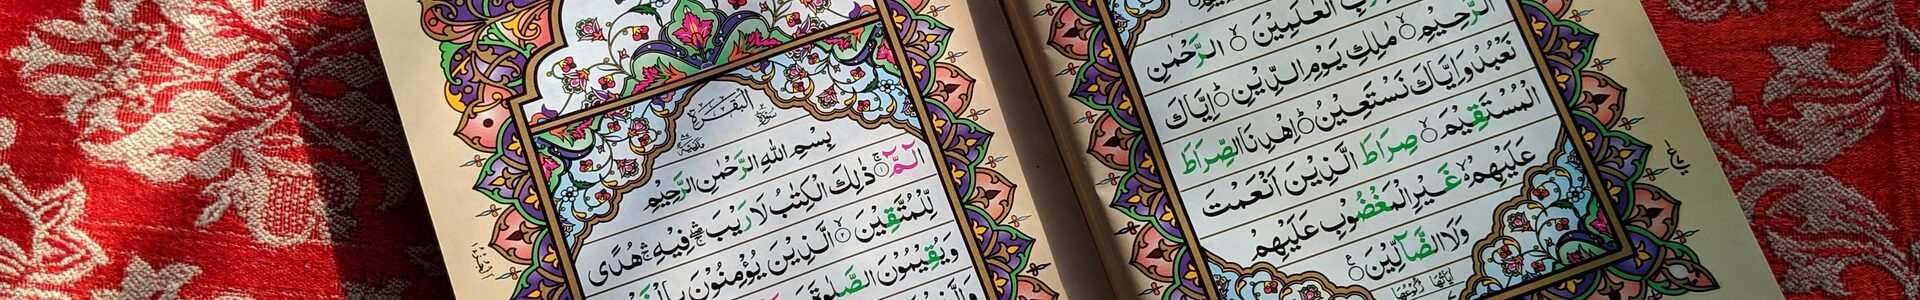 Ein aufgeklappter Koran mit arabischen Schriftzeichen und bunten Verzierungen